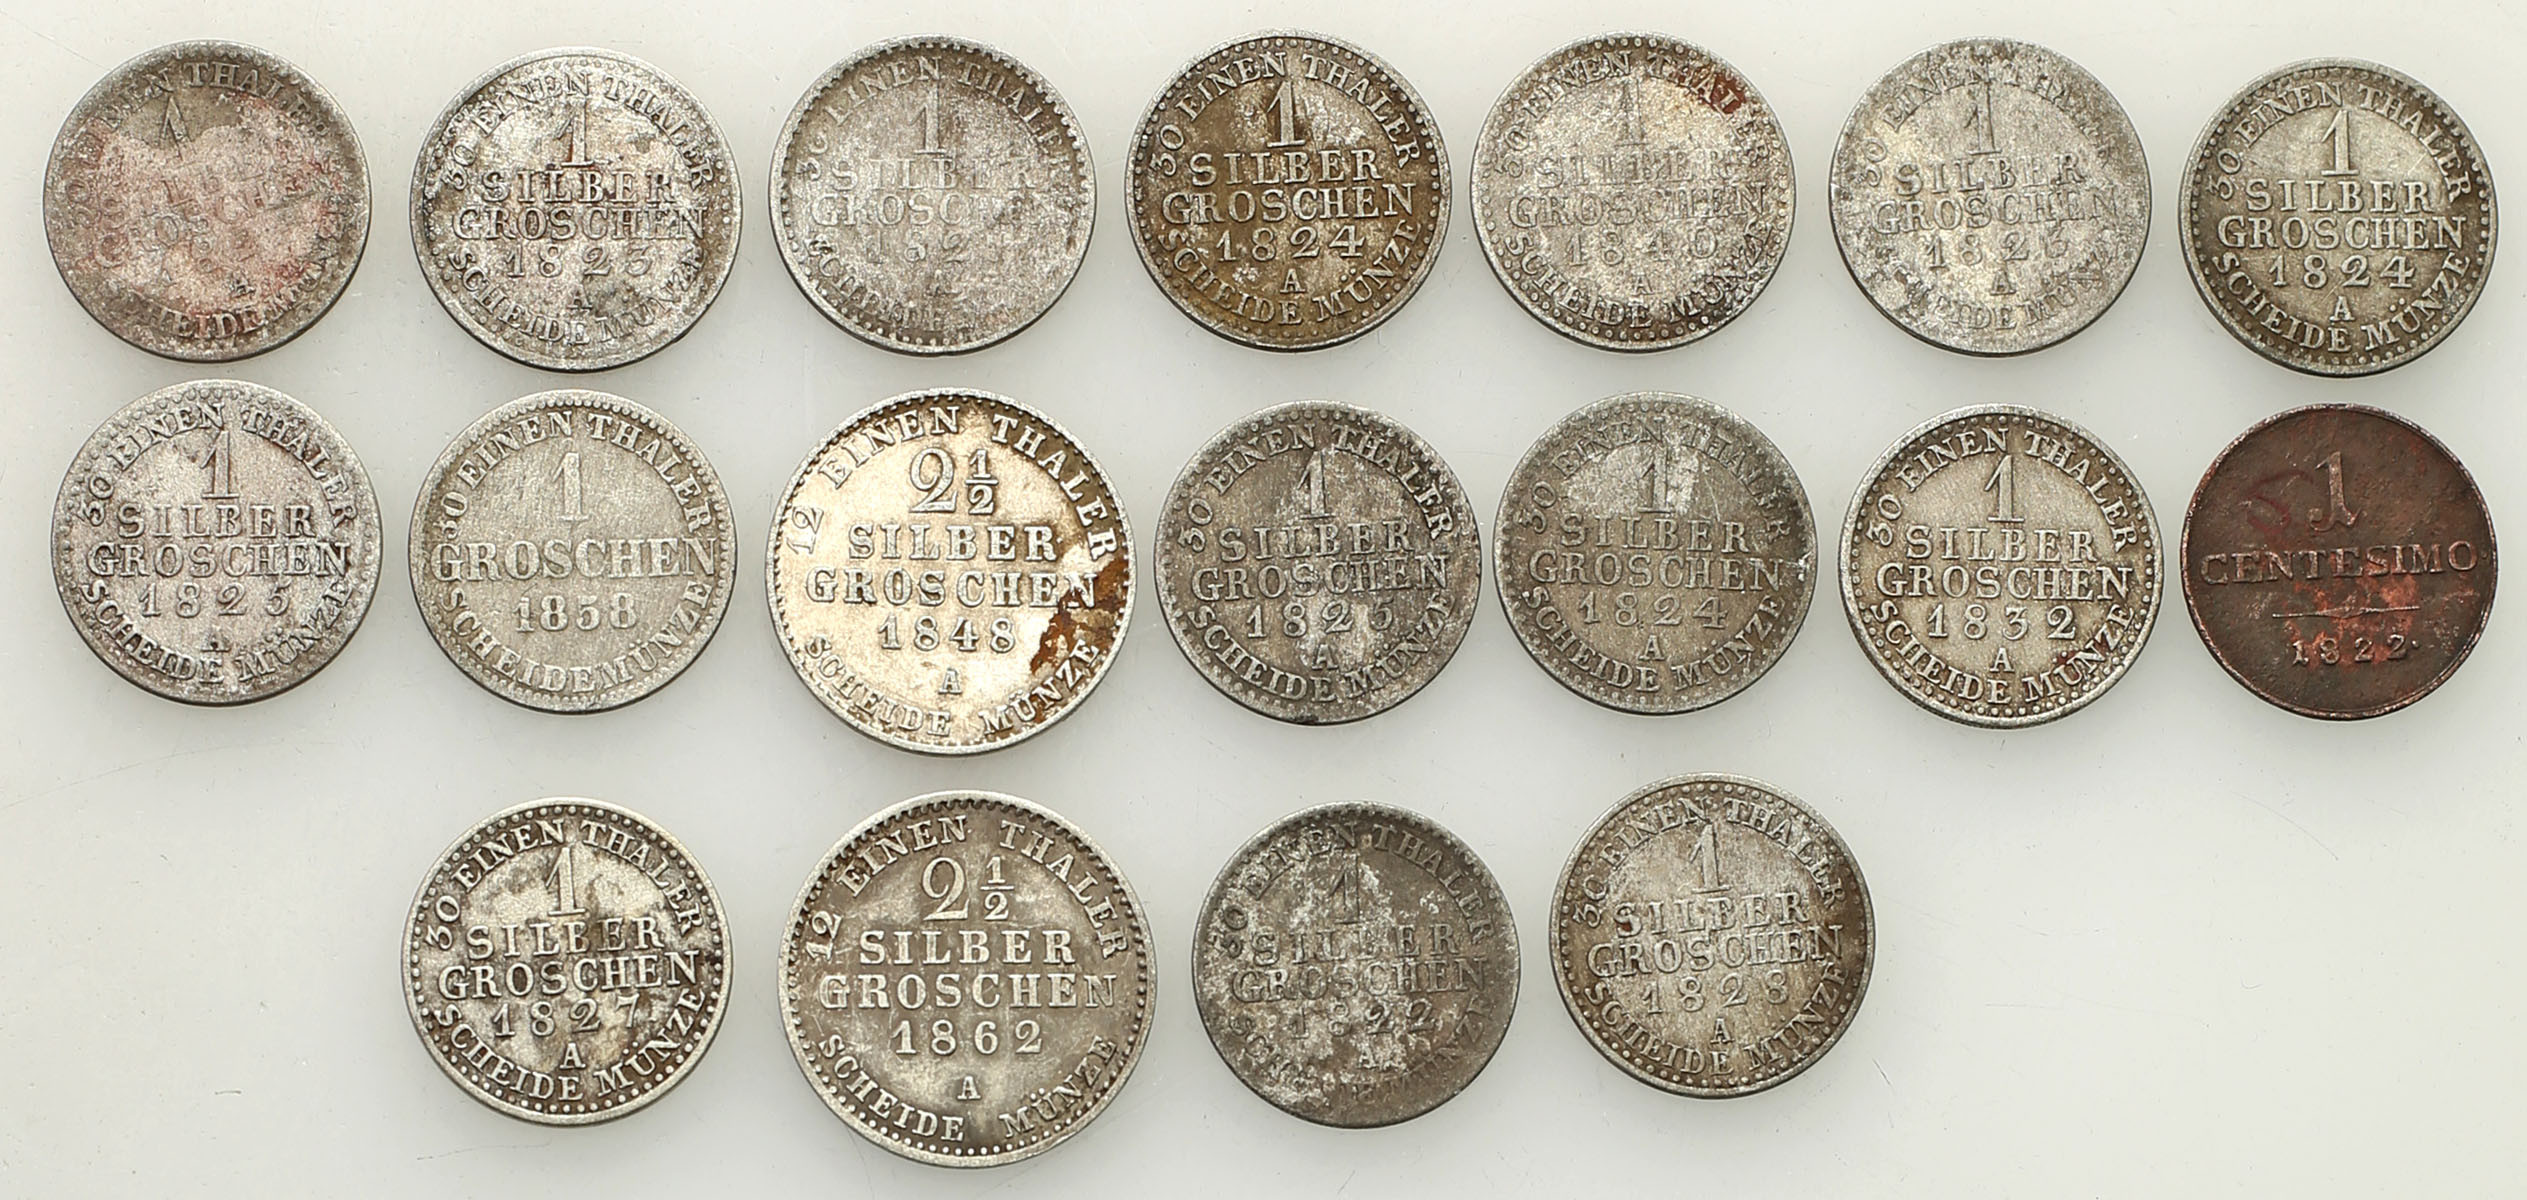 Niemcy, Prusy, Braunschweig-Calenberg, Saksonia 1 do 2 1/2 silbergroschen, 1822-1862, zestaw 18 monet